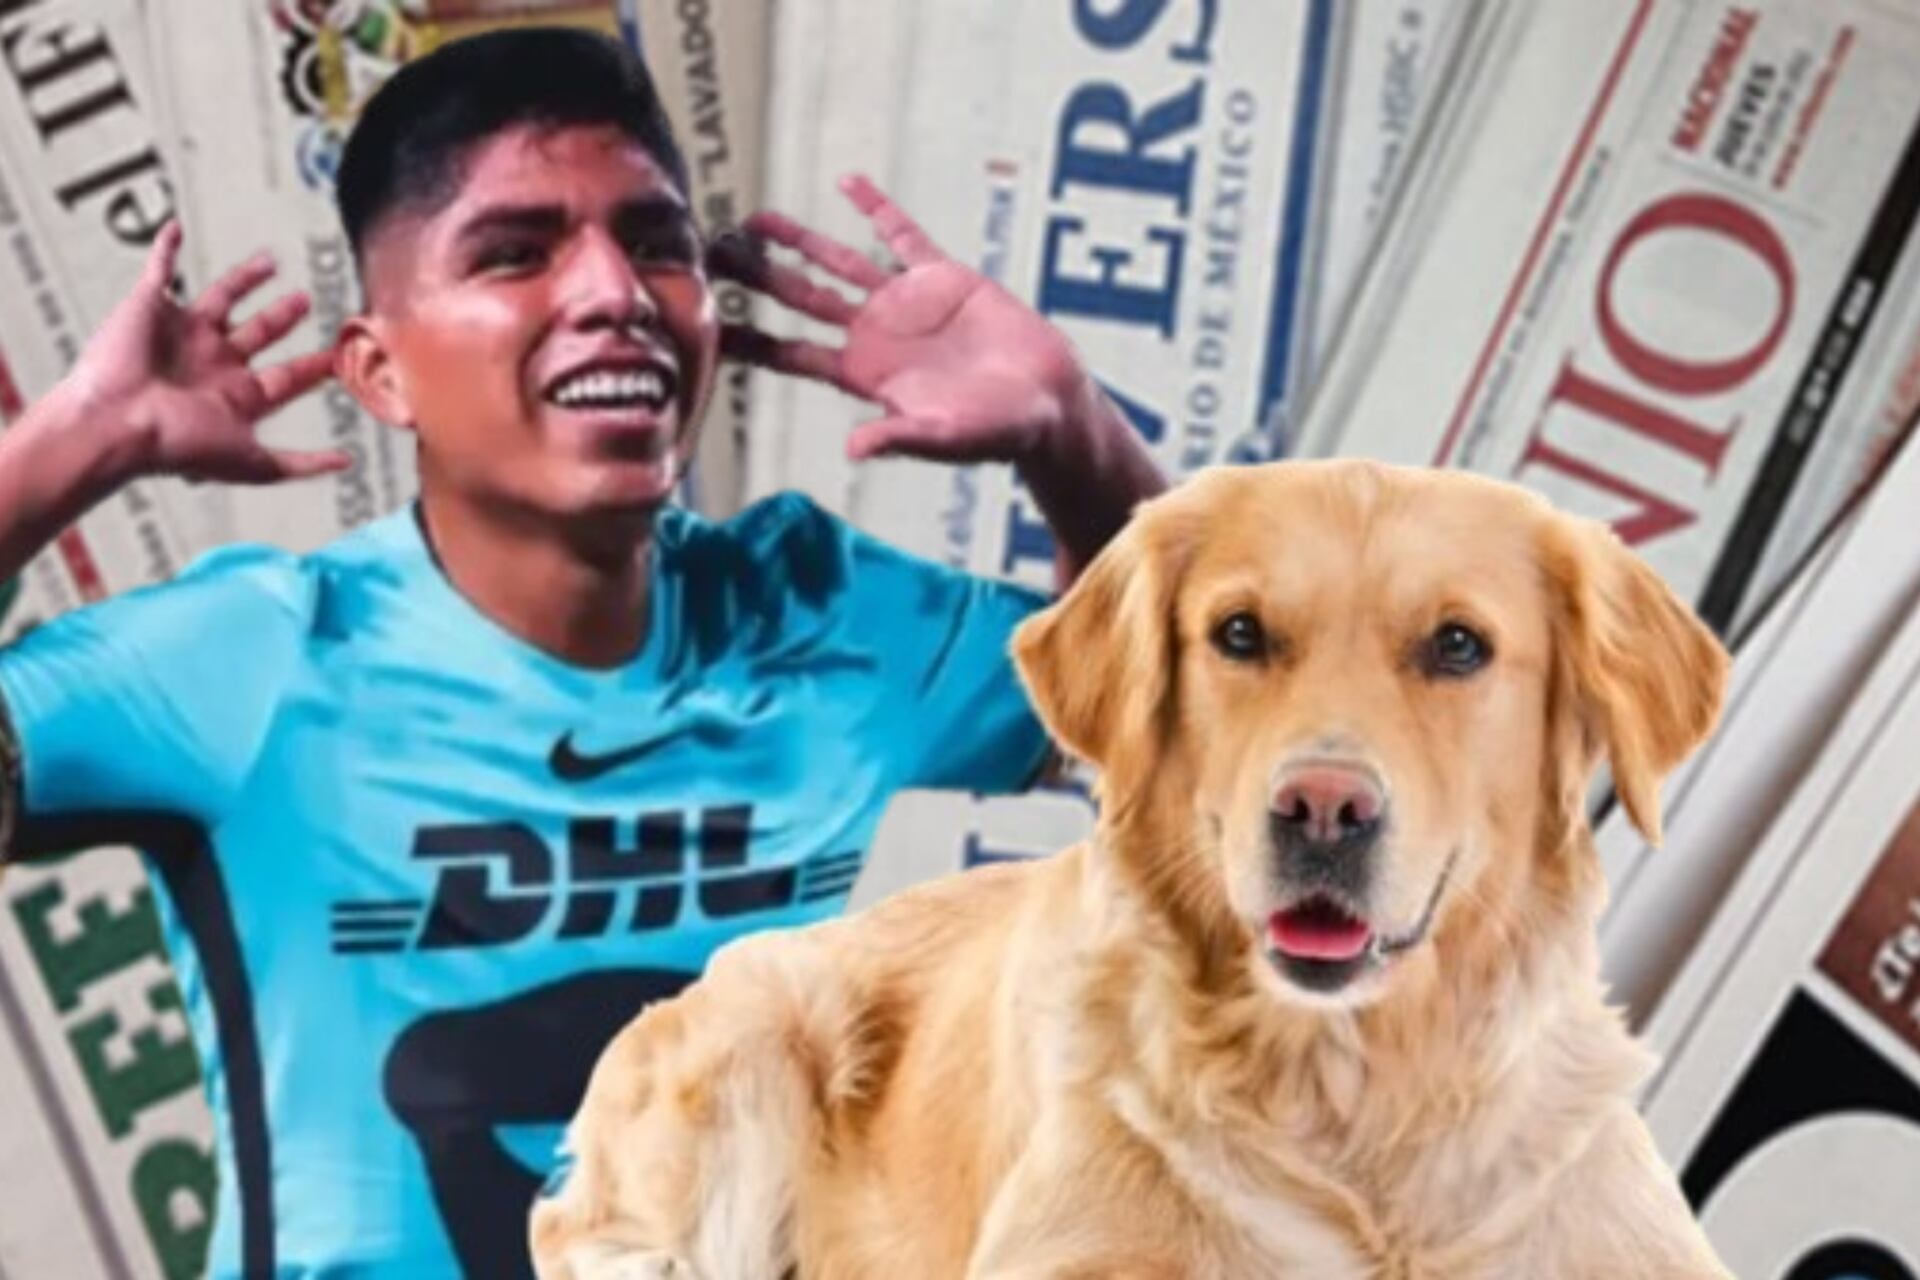 Lo que hizo prensa mexicana, al enterarse historia de Piero Quishpe y su perro